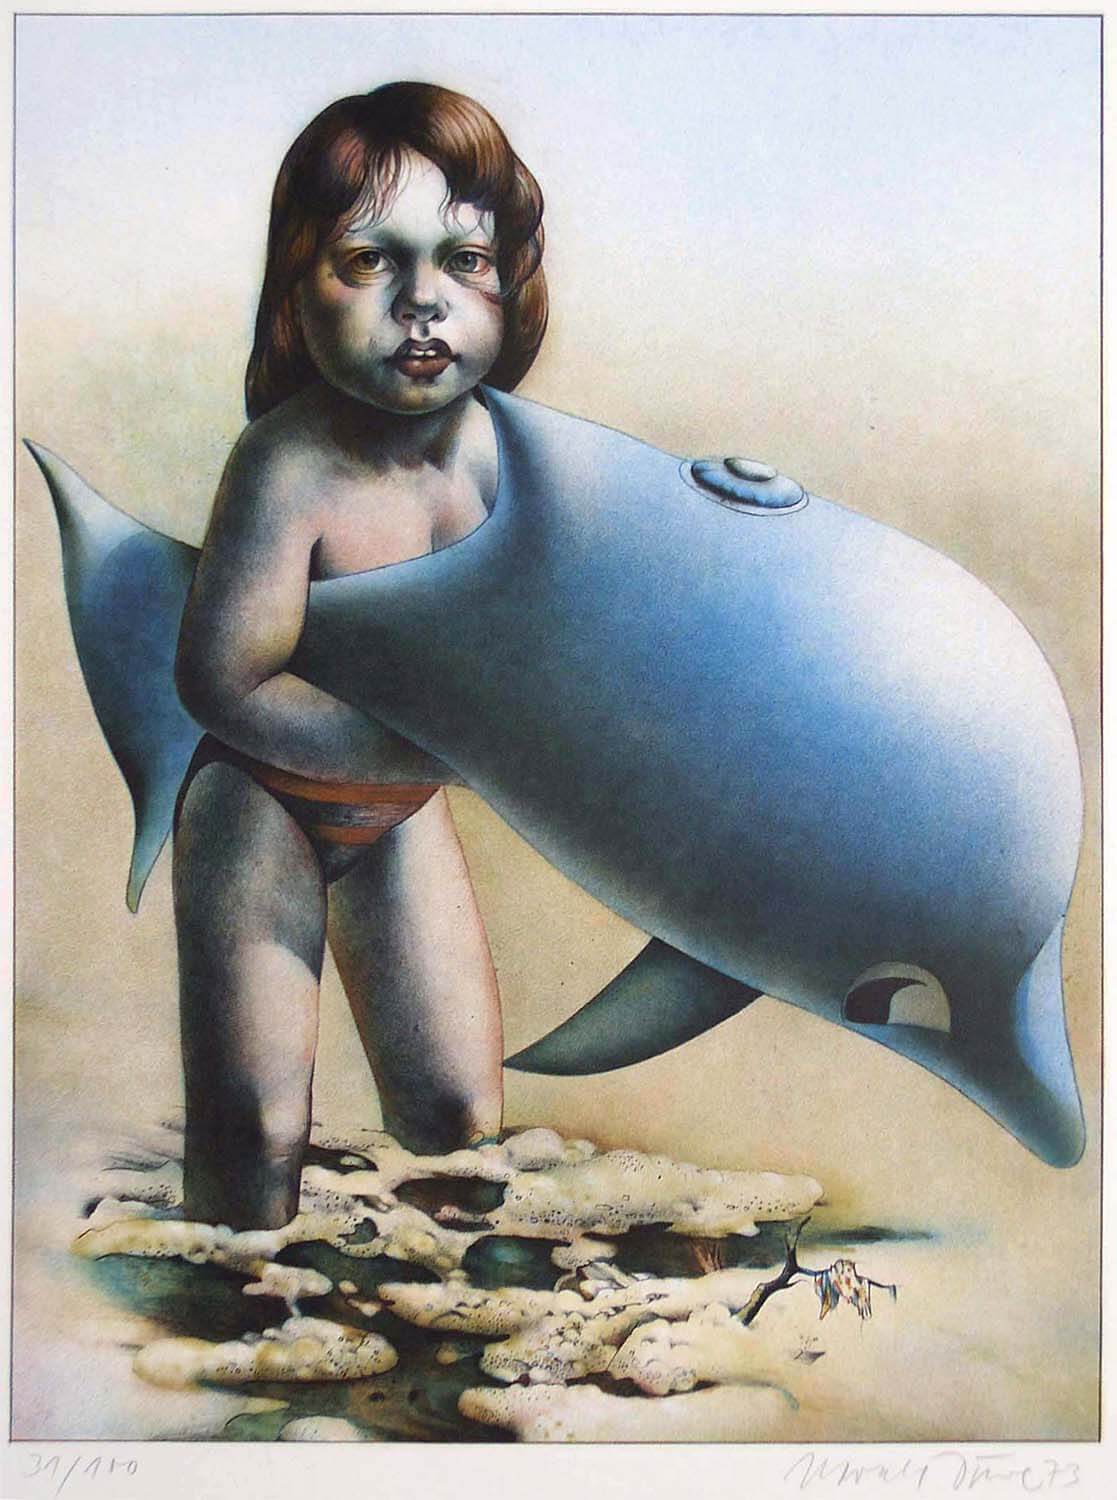 Harald Duwe, o. T. (Kind mit Delphin), 1973, Farblithographie, Auflage: 100, Bild: 51,5 x 39,5 cm, Blatt: 65 x 49,6 cm